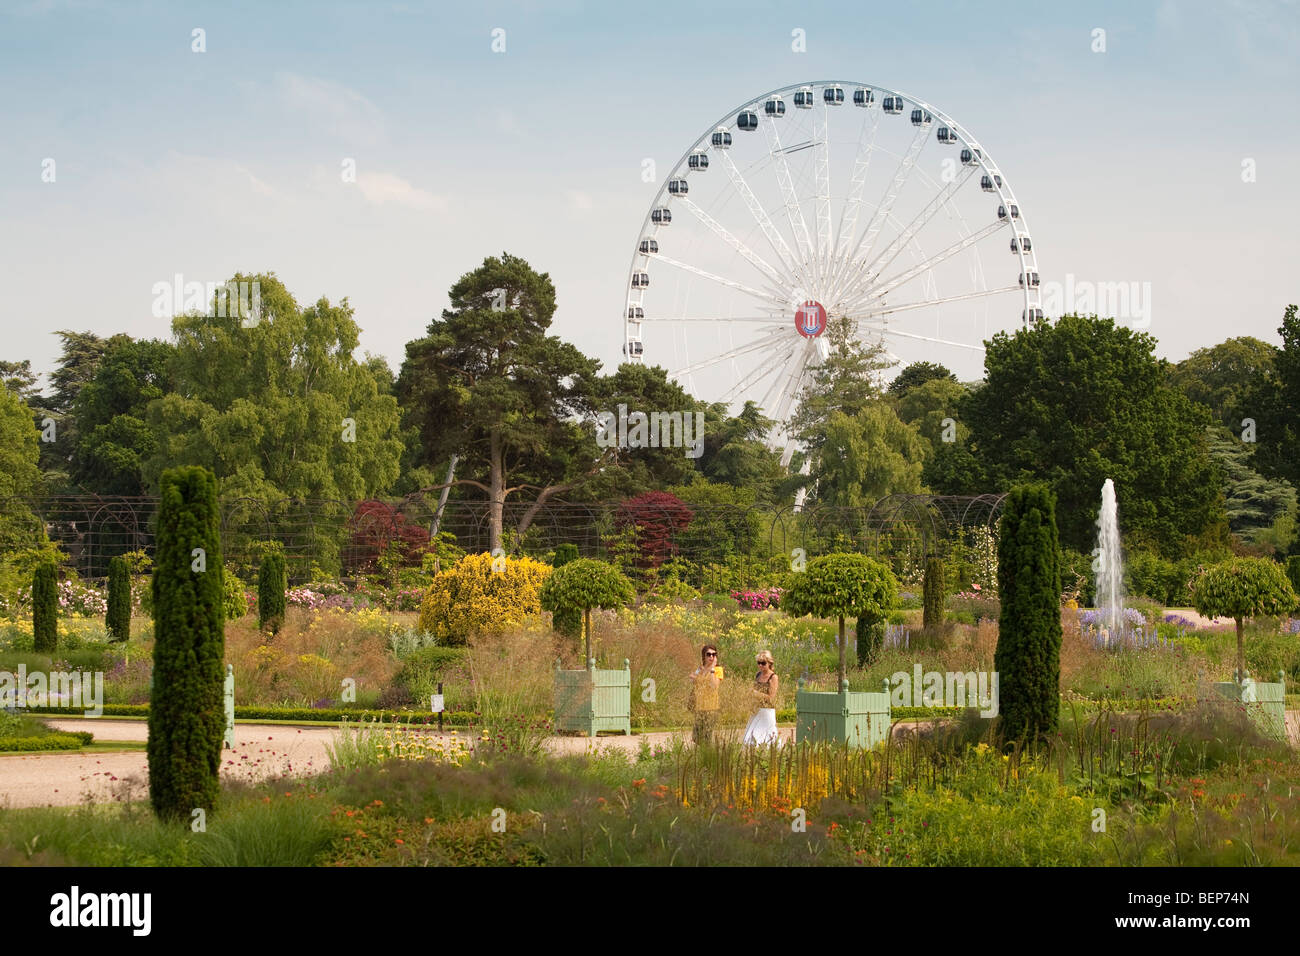 Recherche à travers le jardin italien vers la grande roue à Trentham Gardens, Stoke on Trent, Staffordshire Banque D'Images